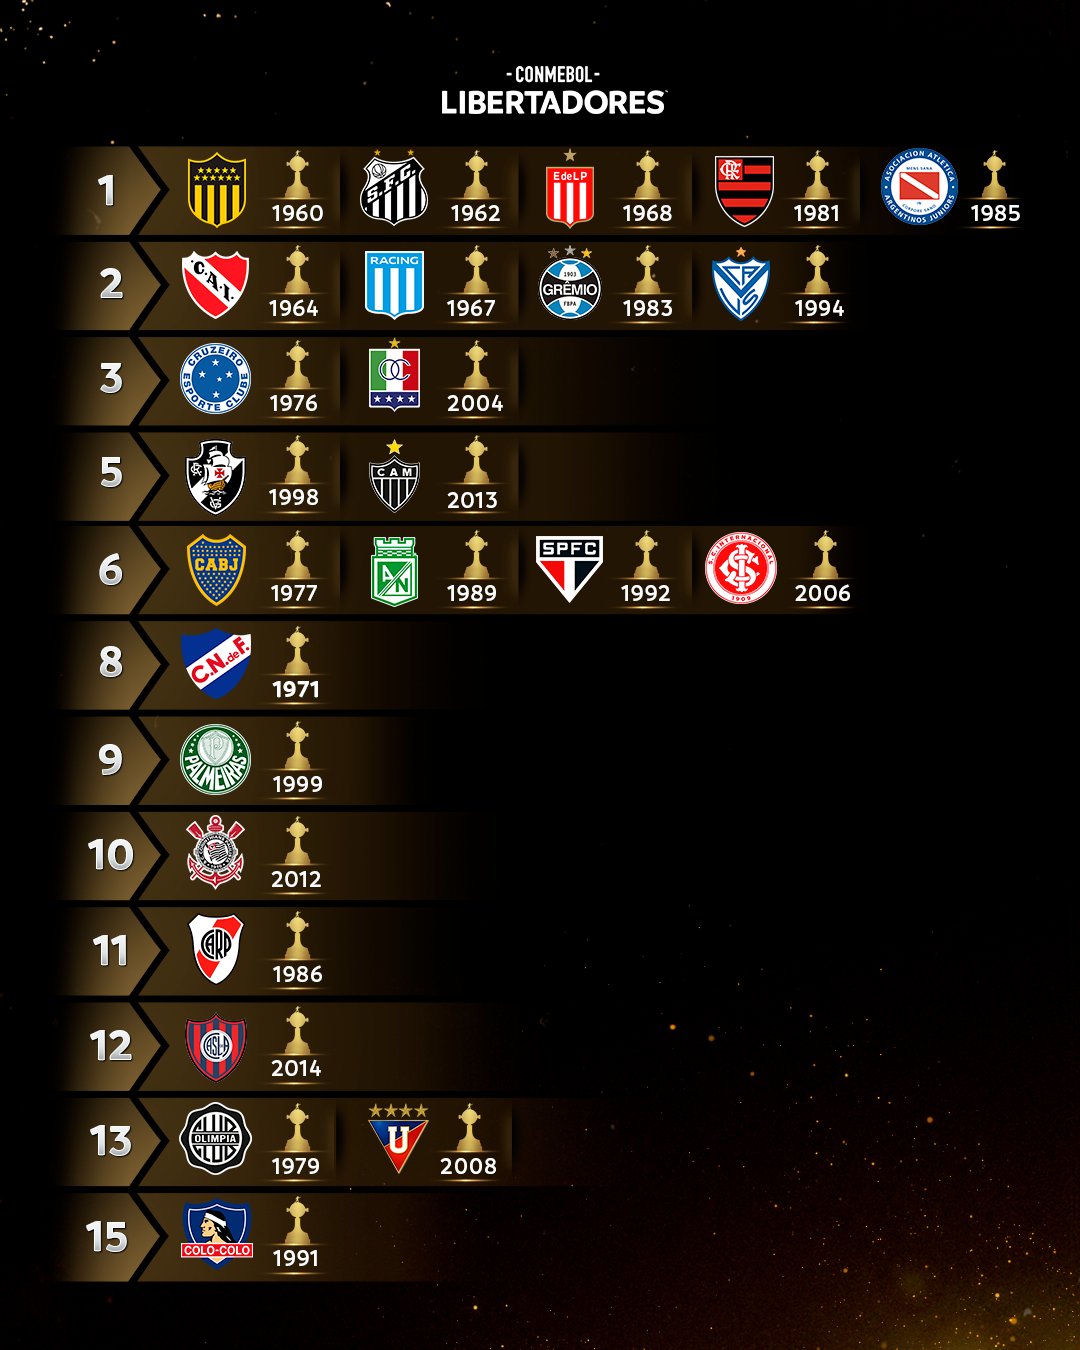 ¿Cuántas Libertadores tiene el Flamengo